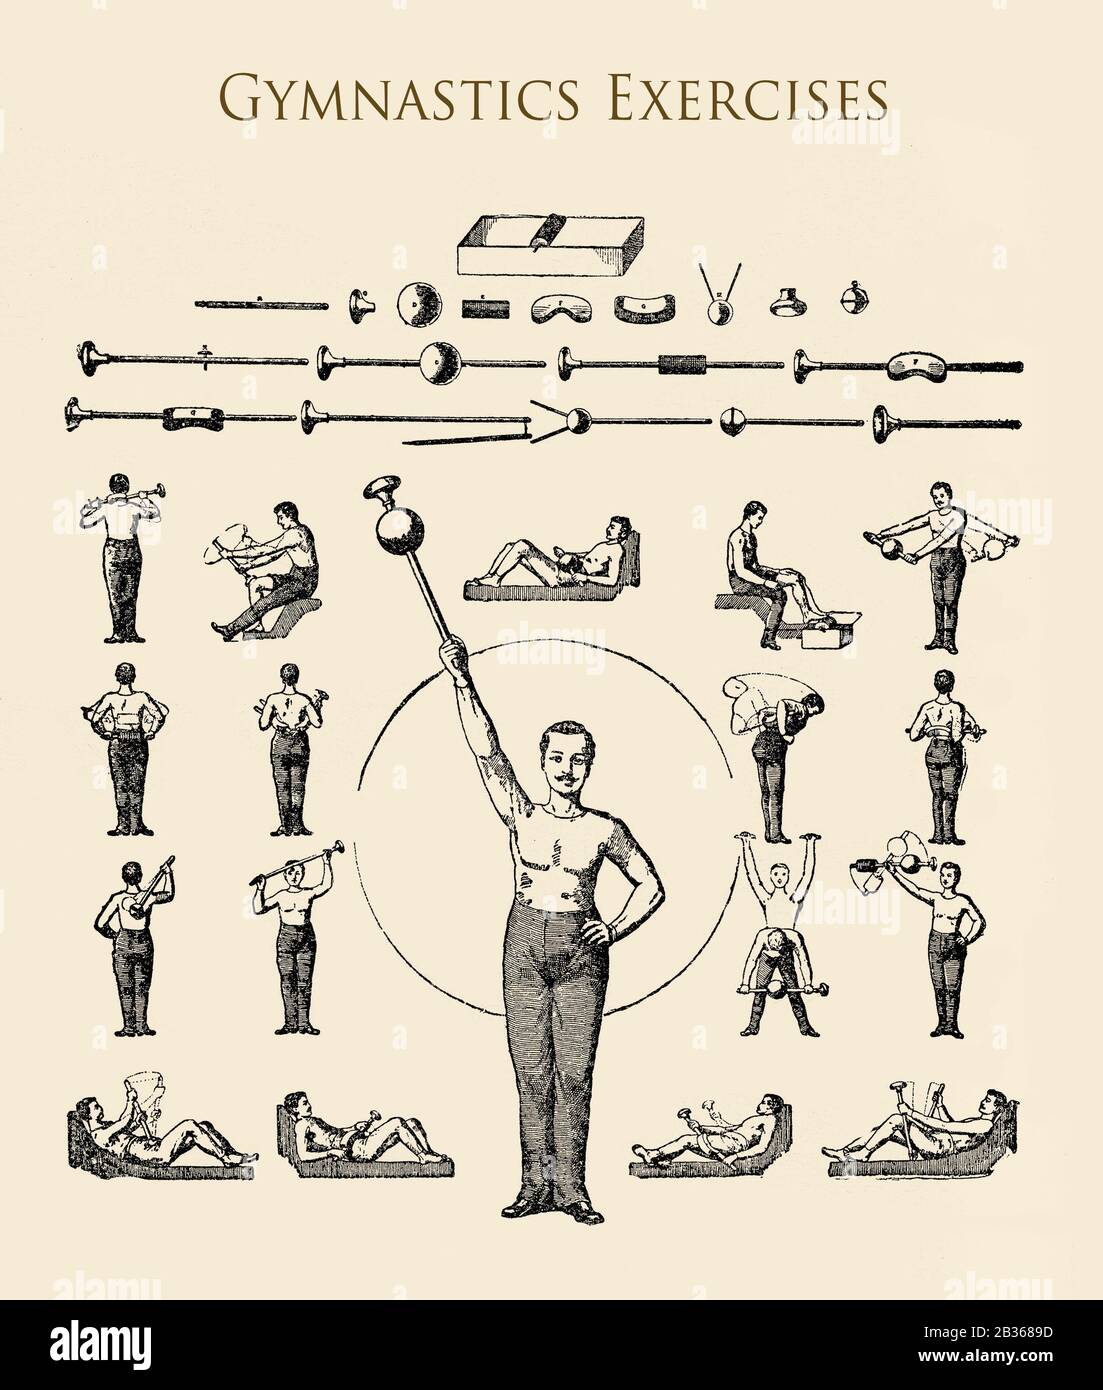 Santé et médecine : exercices de gymnastique avec des engins et de l'équipement, tableau illustré du XIXe siècle Banque D'Images